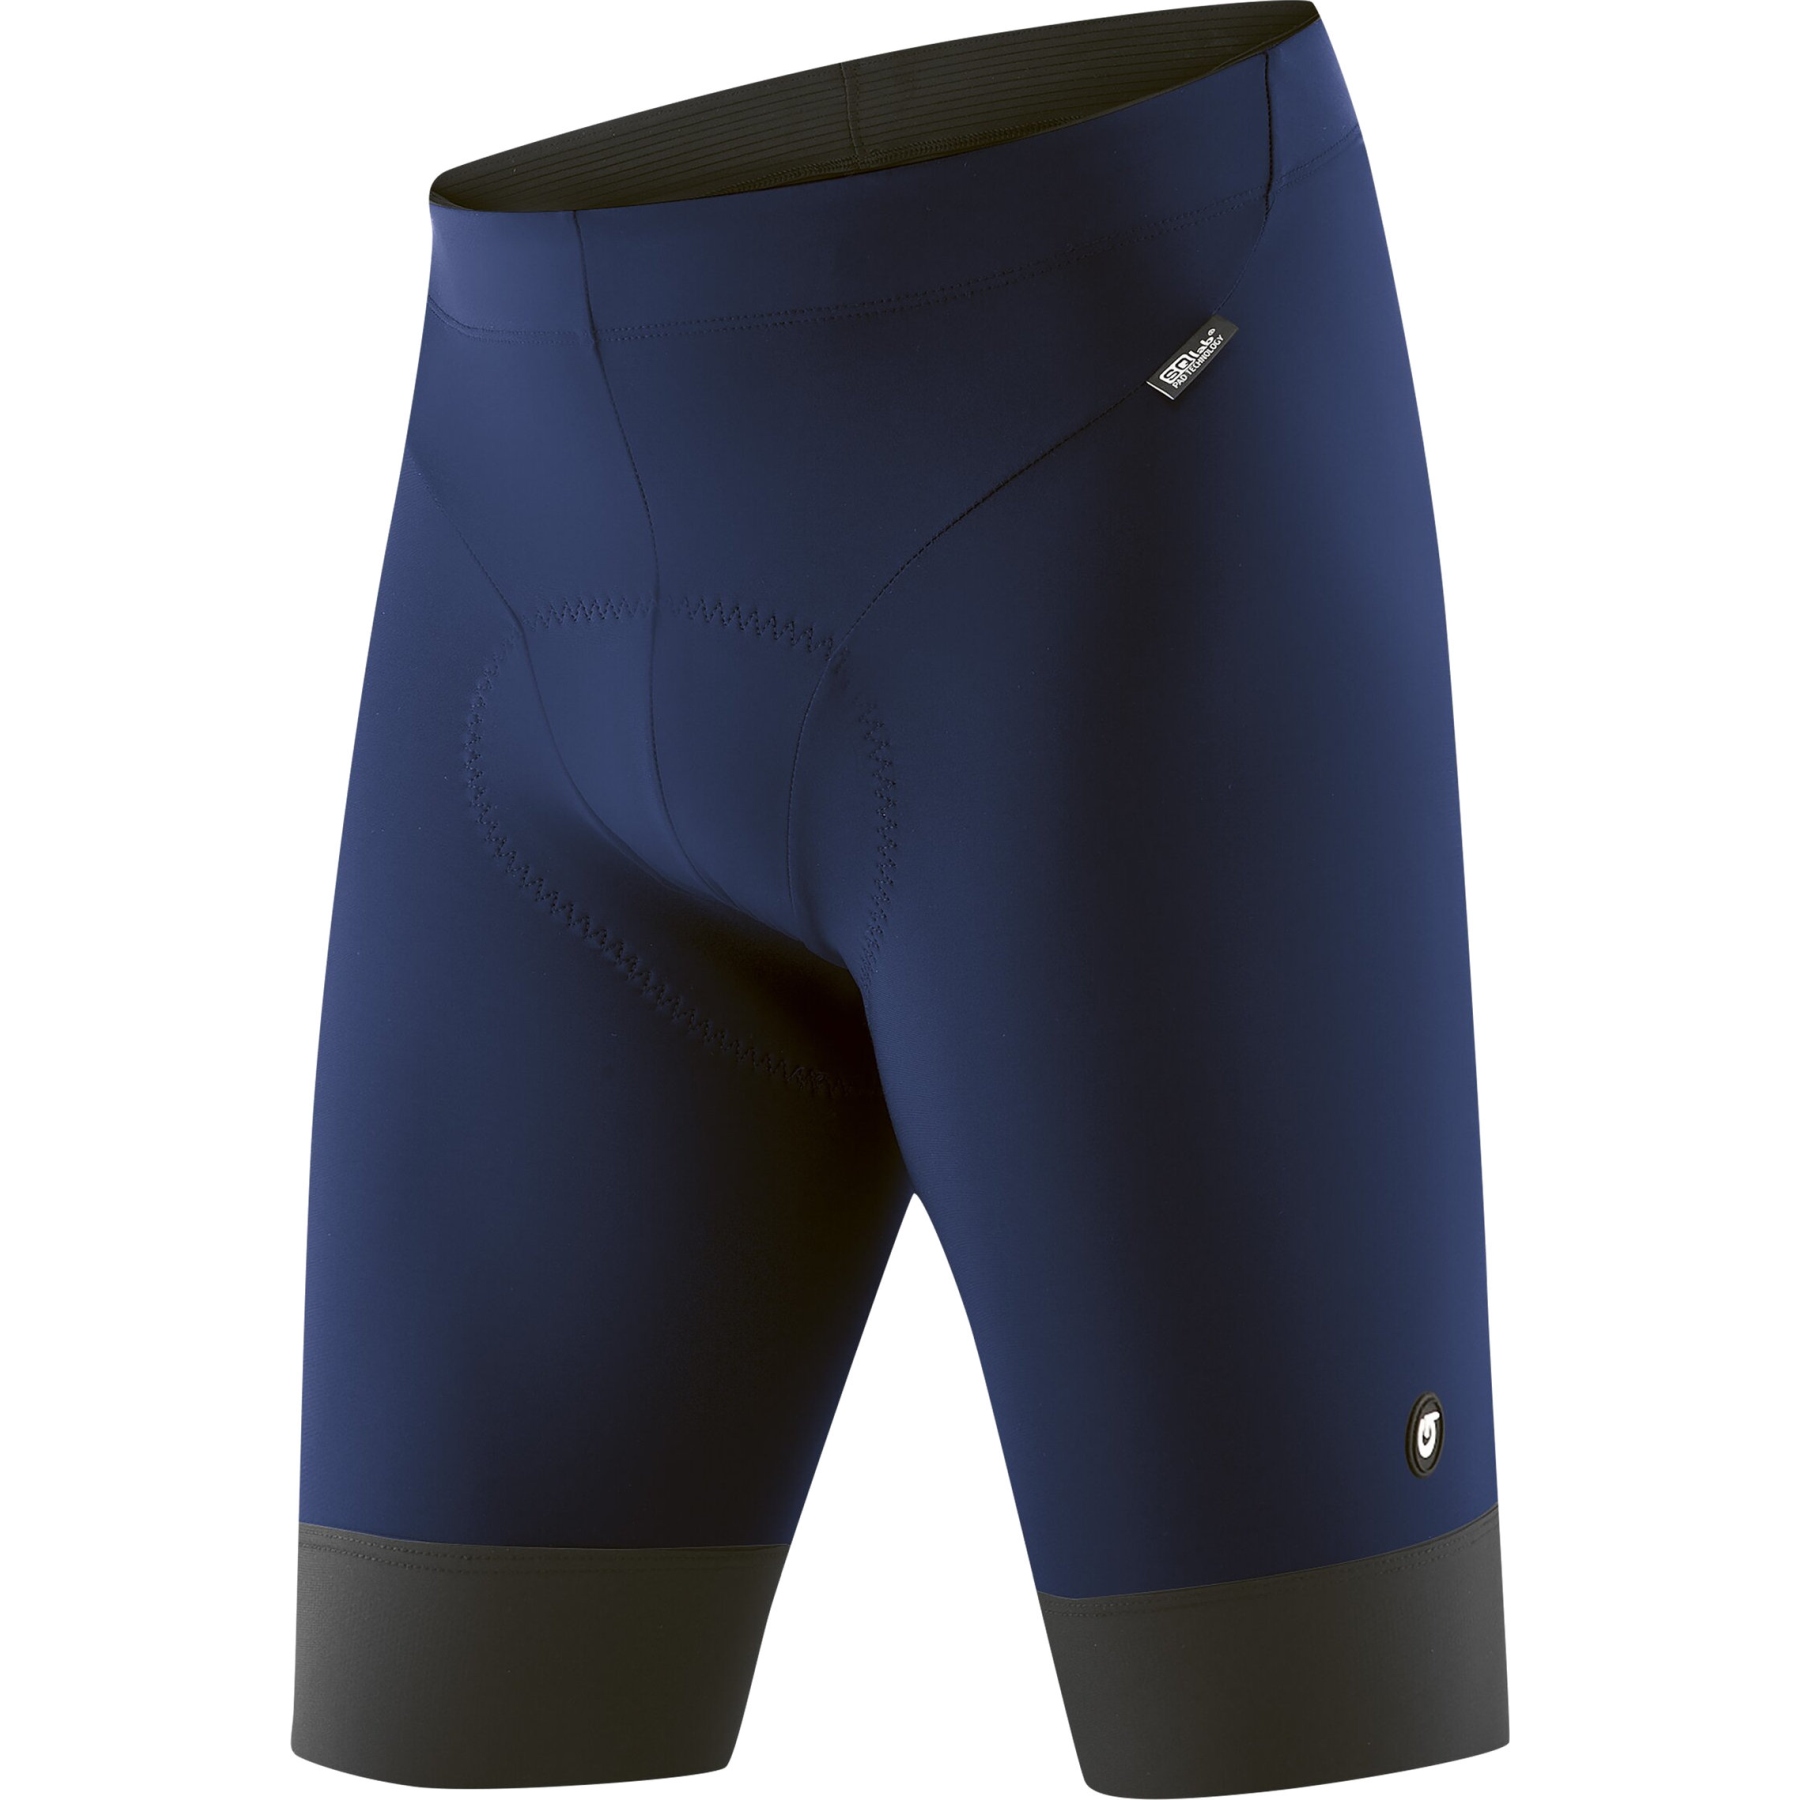 Image of Gonso SQlab GO Men's Bike Shorts - Medieval Blue